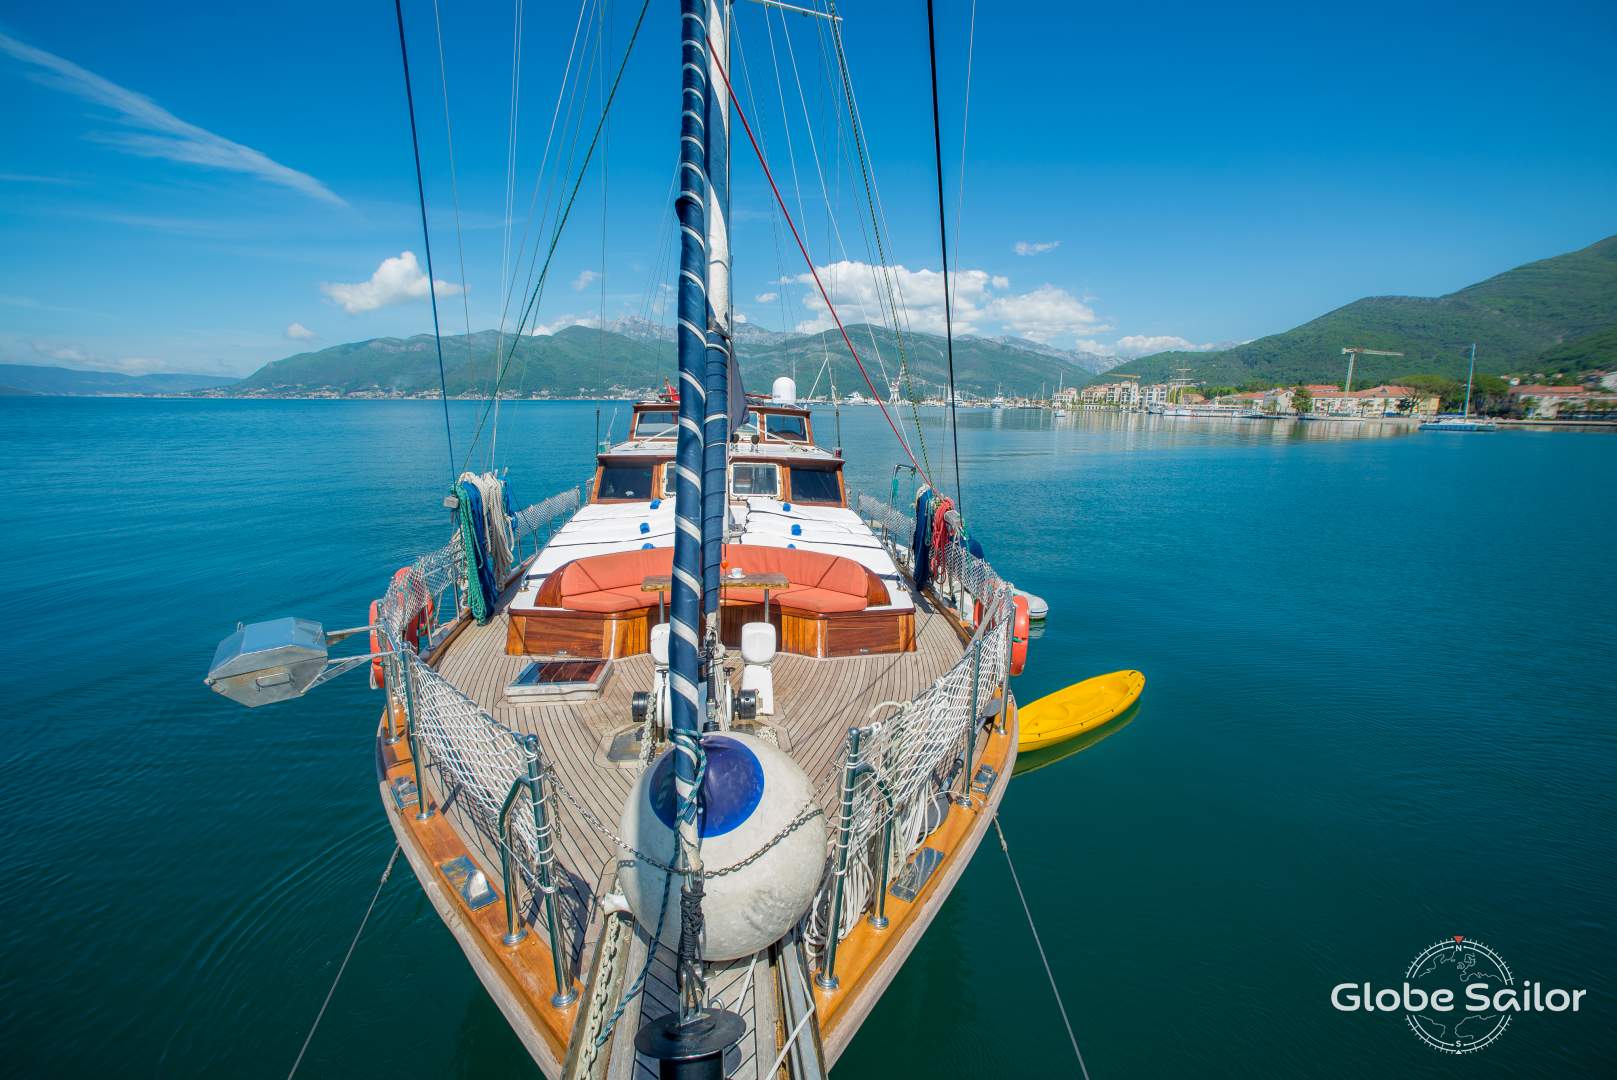 Admira la bahía de Kotor desde la proa del barco.  Explora el Adriático a bordo de una goleta tradicional.